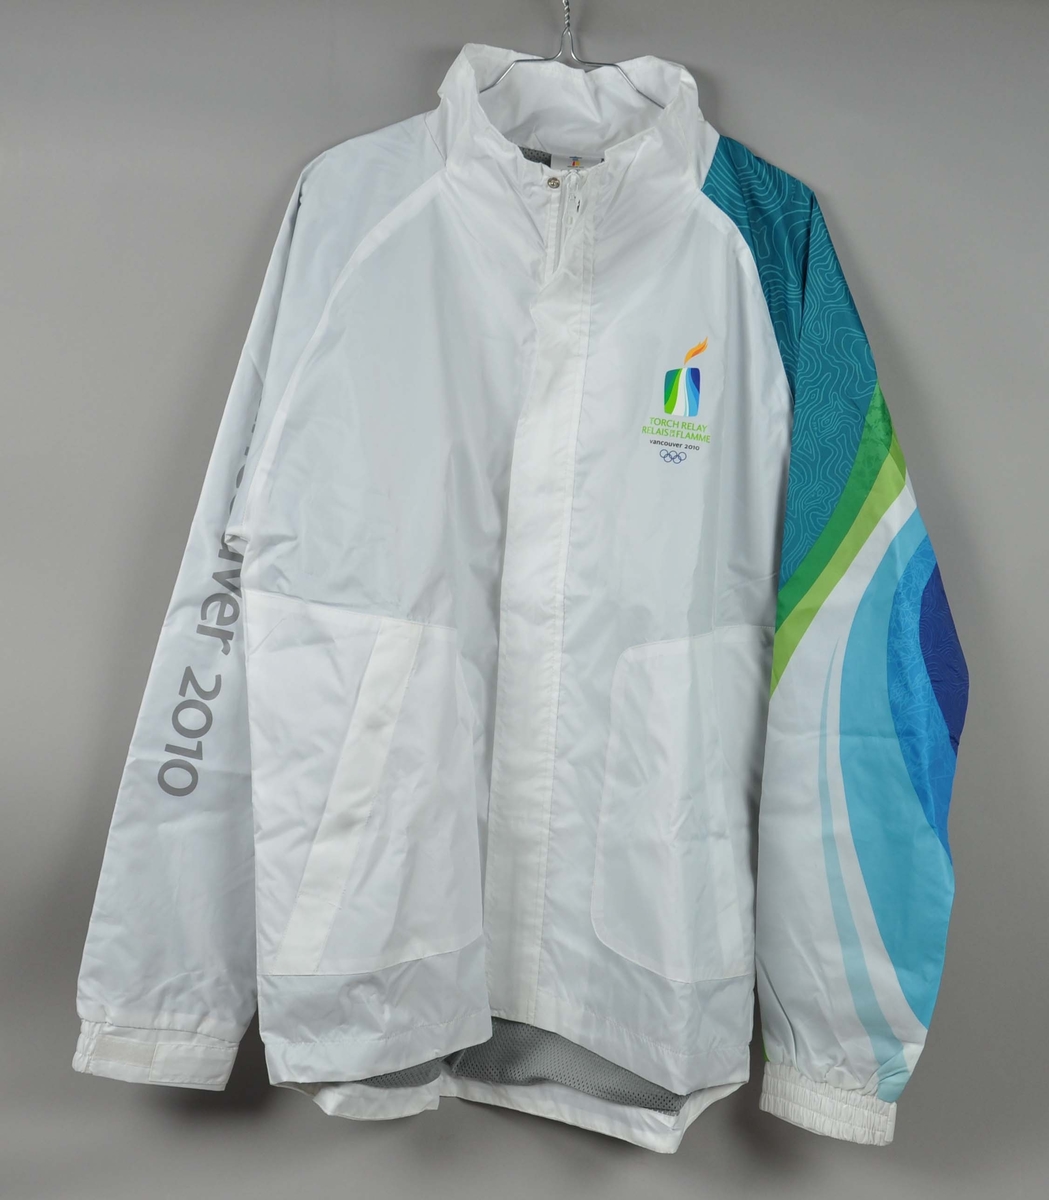 Hvit jakke med flerfarget erme. Motiv av de olympiske ringene laminert på ryggen. Logo for fakkelstafetten i forbindelse med de olympiske vinterleker i Vancouver 2010 er laminert på brystet.